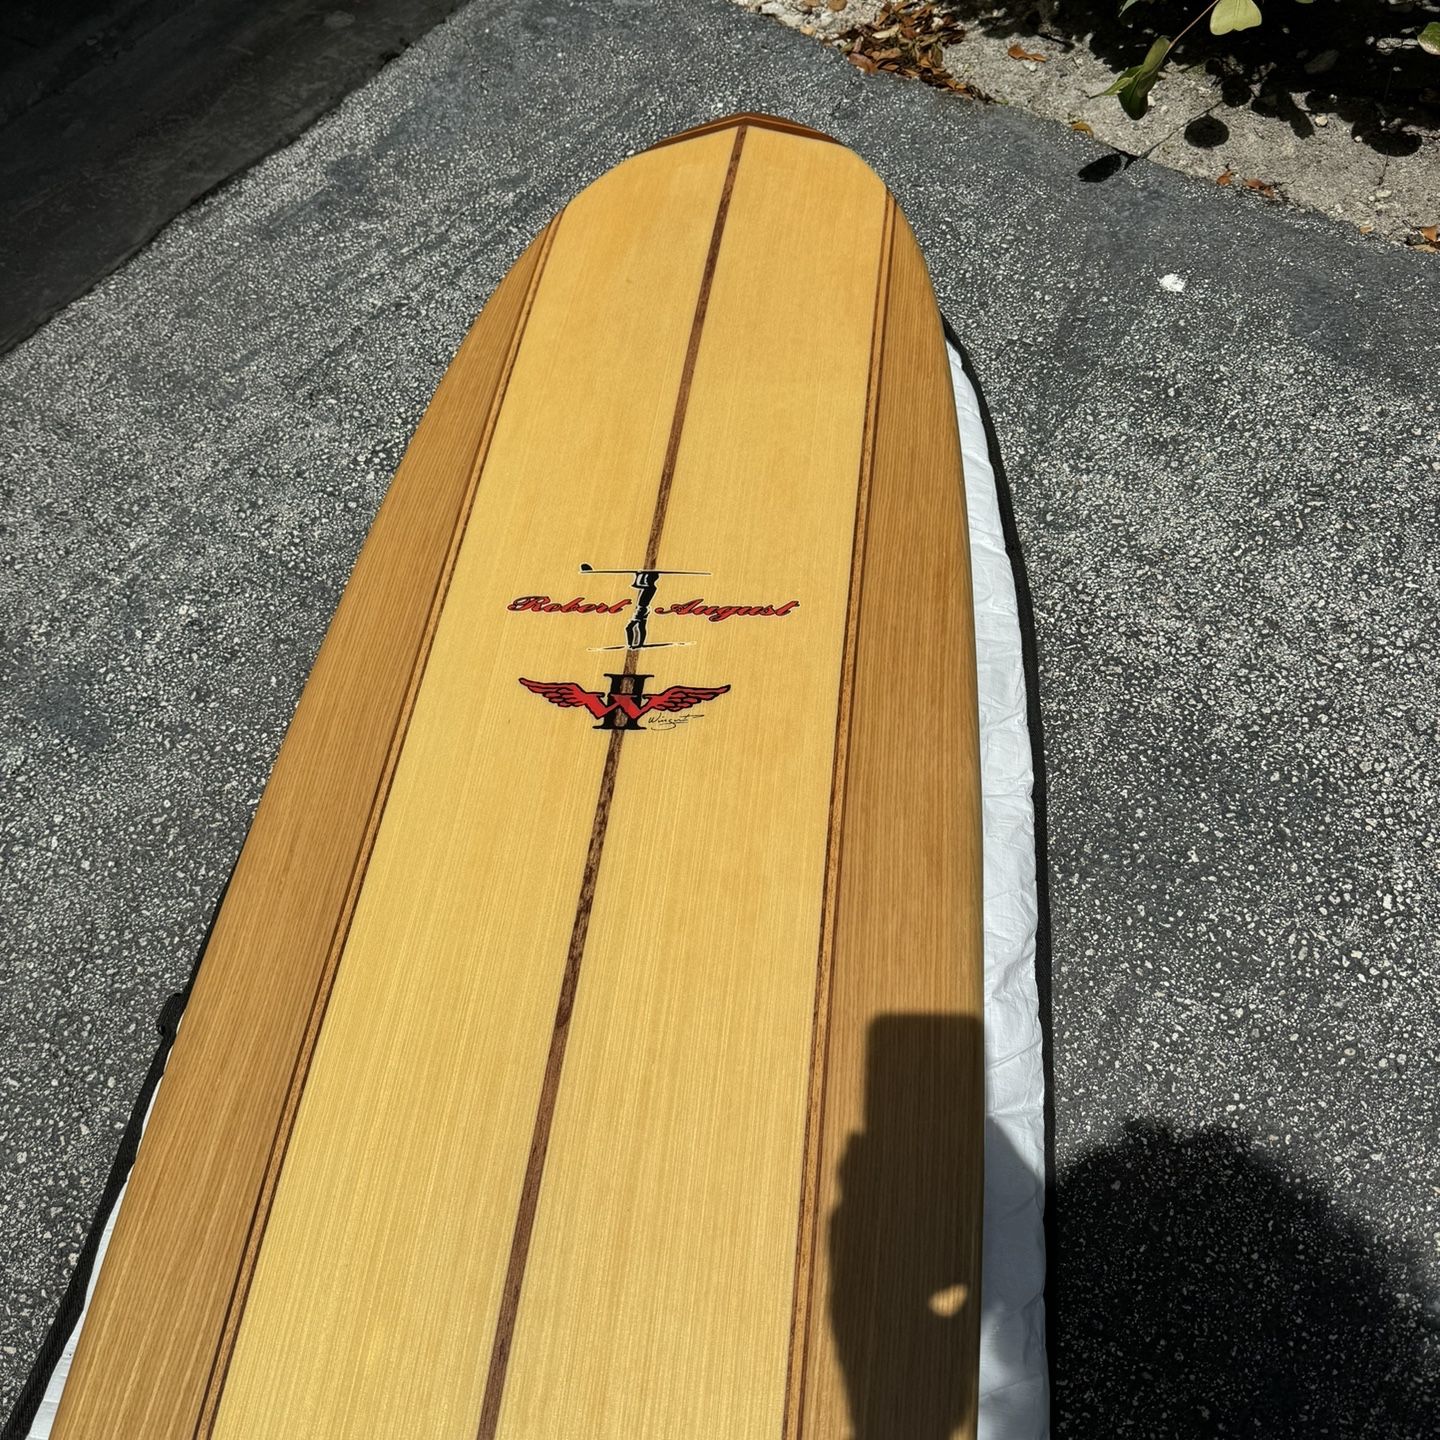 Robert August/Wingnut  wood  9.0 Longboard  New